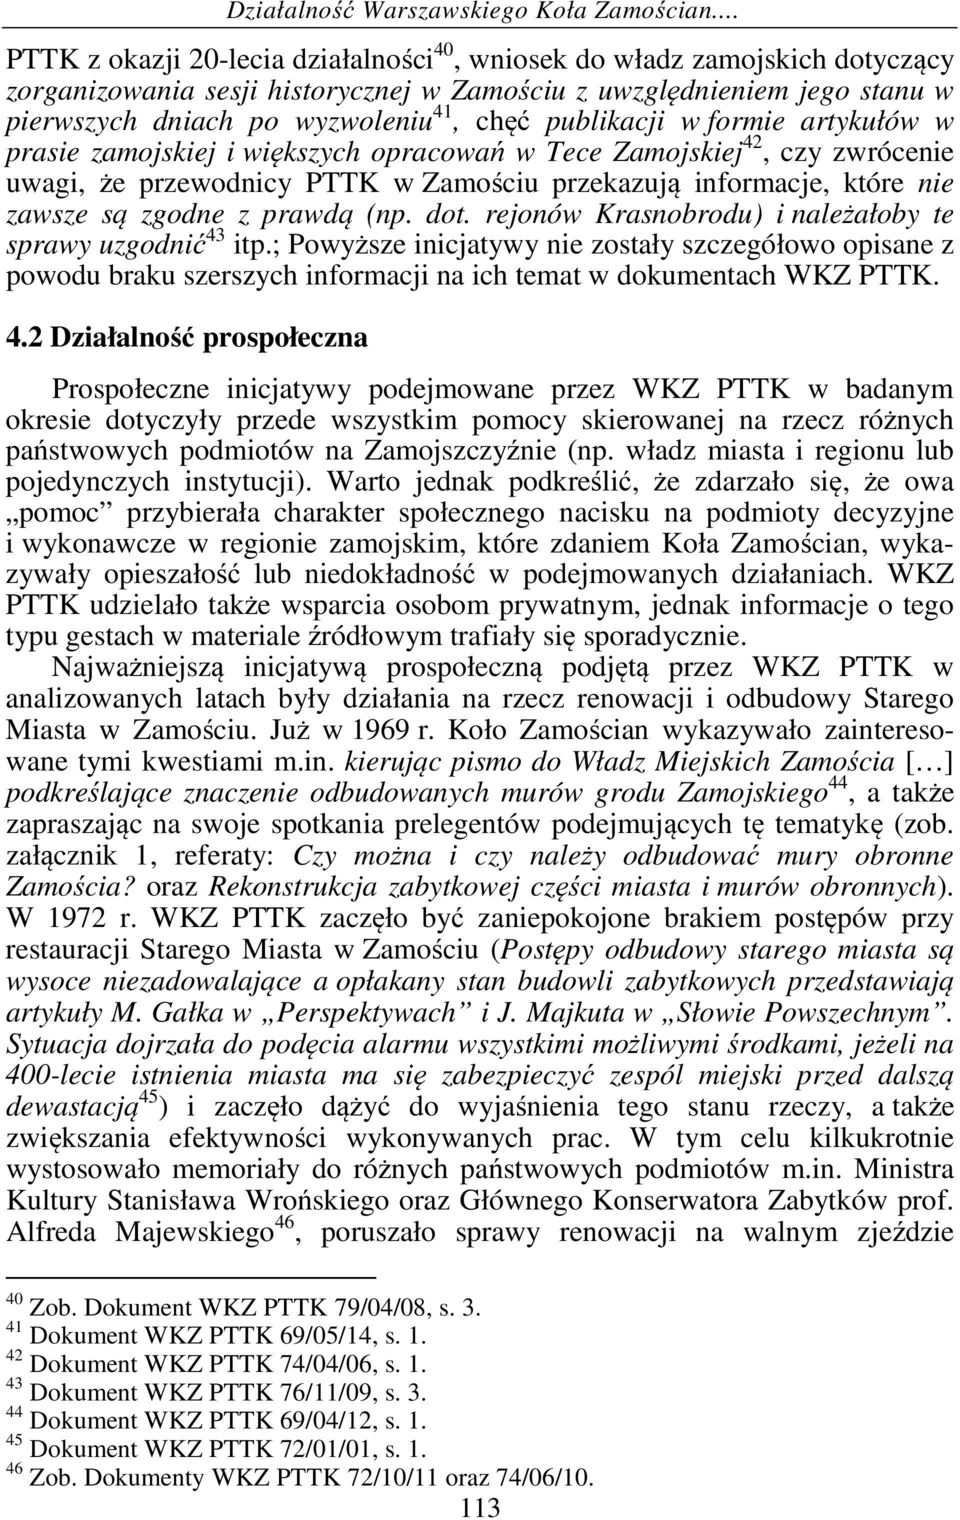 publikacji w formie artykułów w prasie zamojskiej i większych opracowań w Tece Zamojskiej 42, czy zwrócenie uwagi, że przewodnicy PTTK w Zamościu przekazują informacje, które nie zawsze są zgodne z